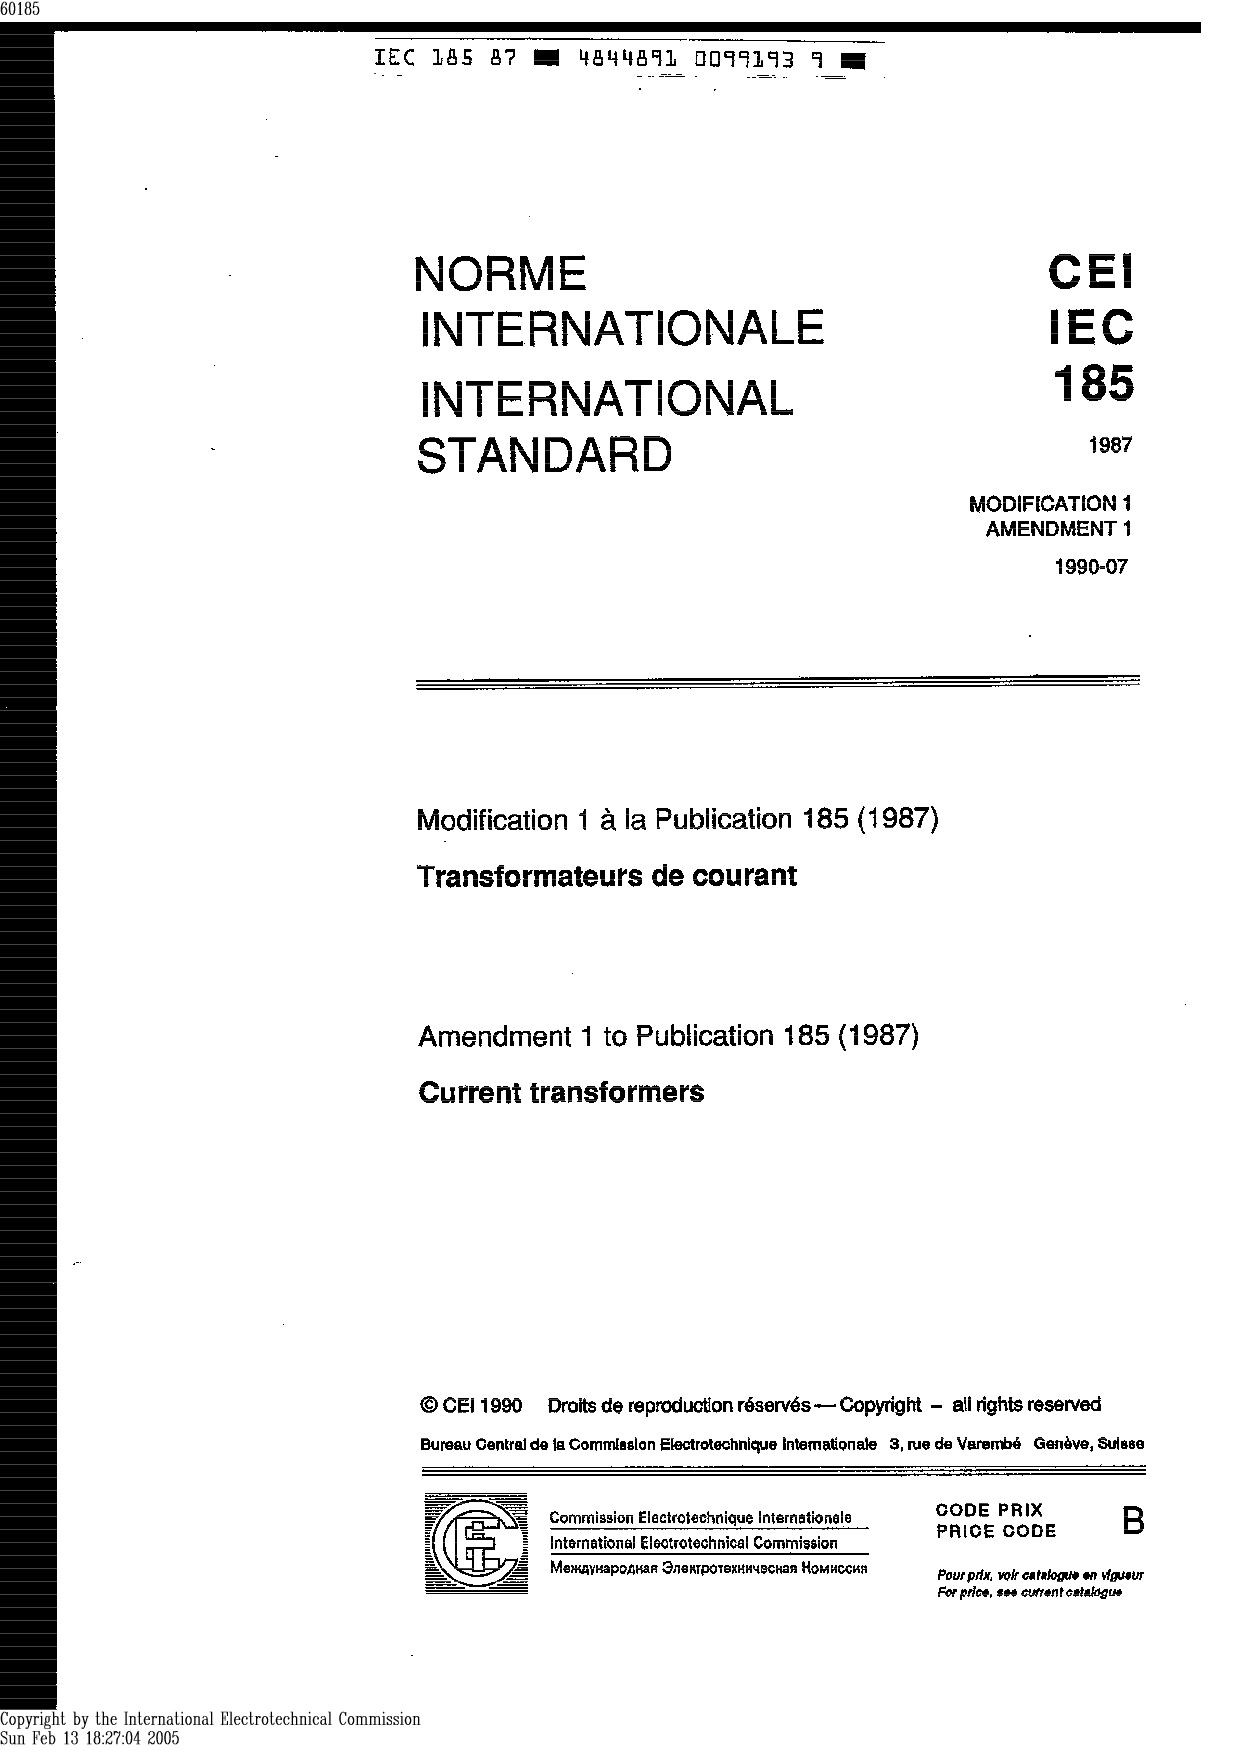 IEC 60185:1987/AMD1:1990